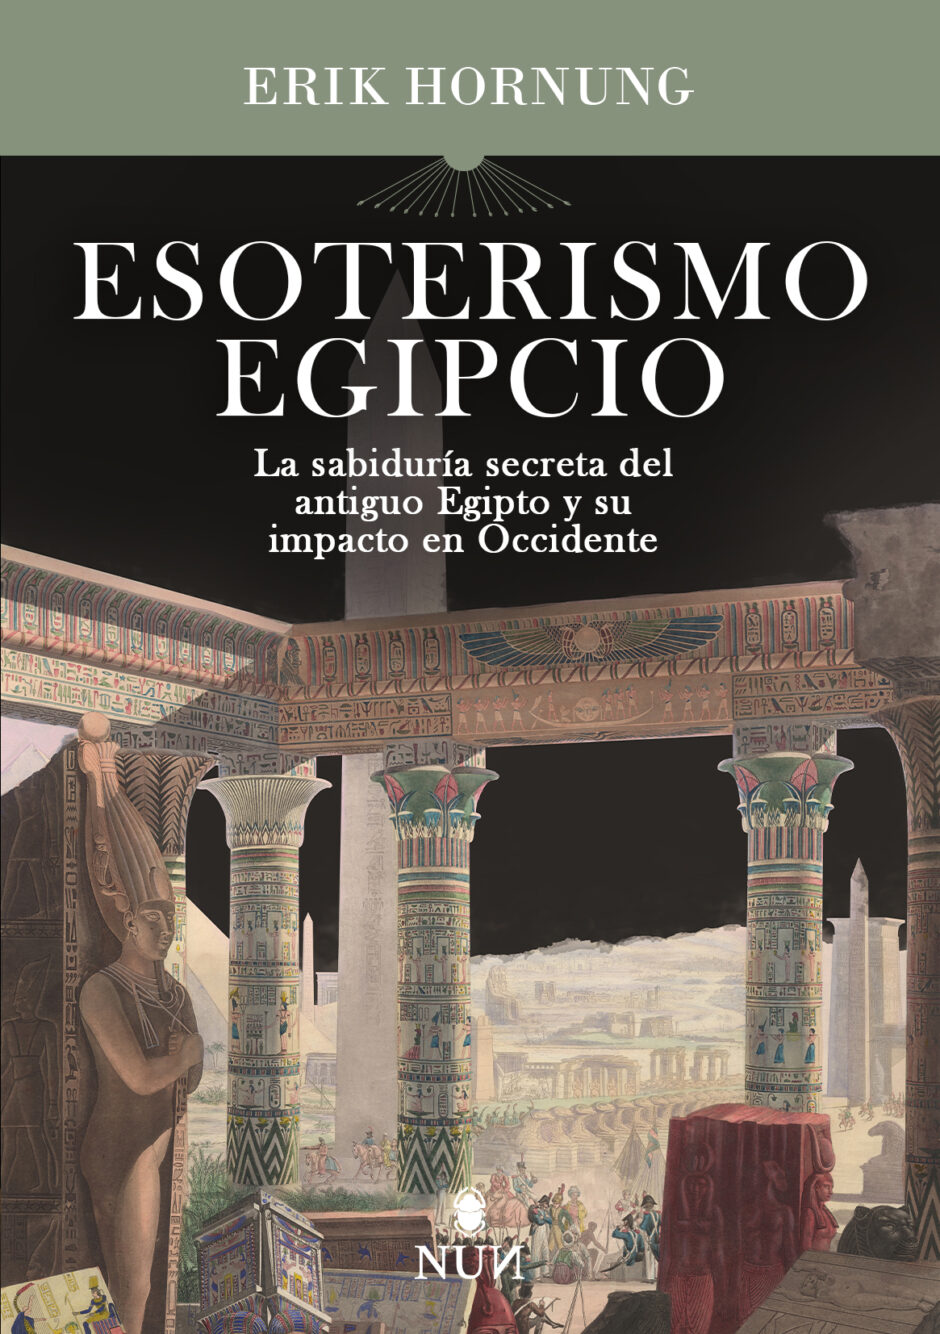 La influencia del esoterismo egipcio en la cultura occidental, desde la masonería a la poesía romántica